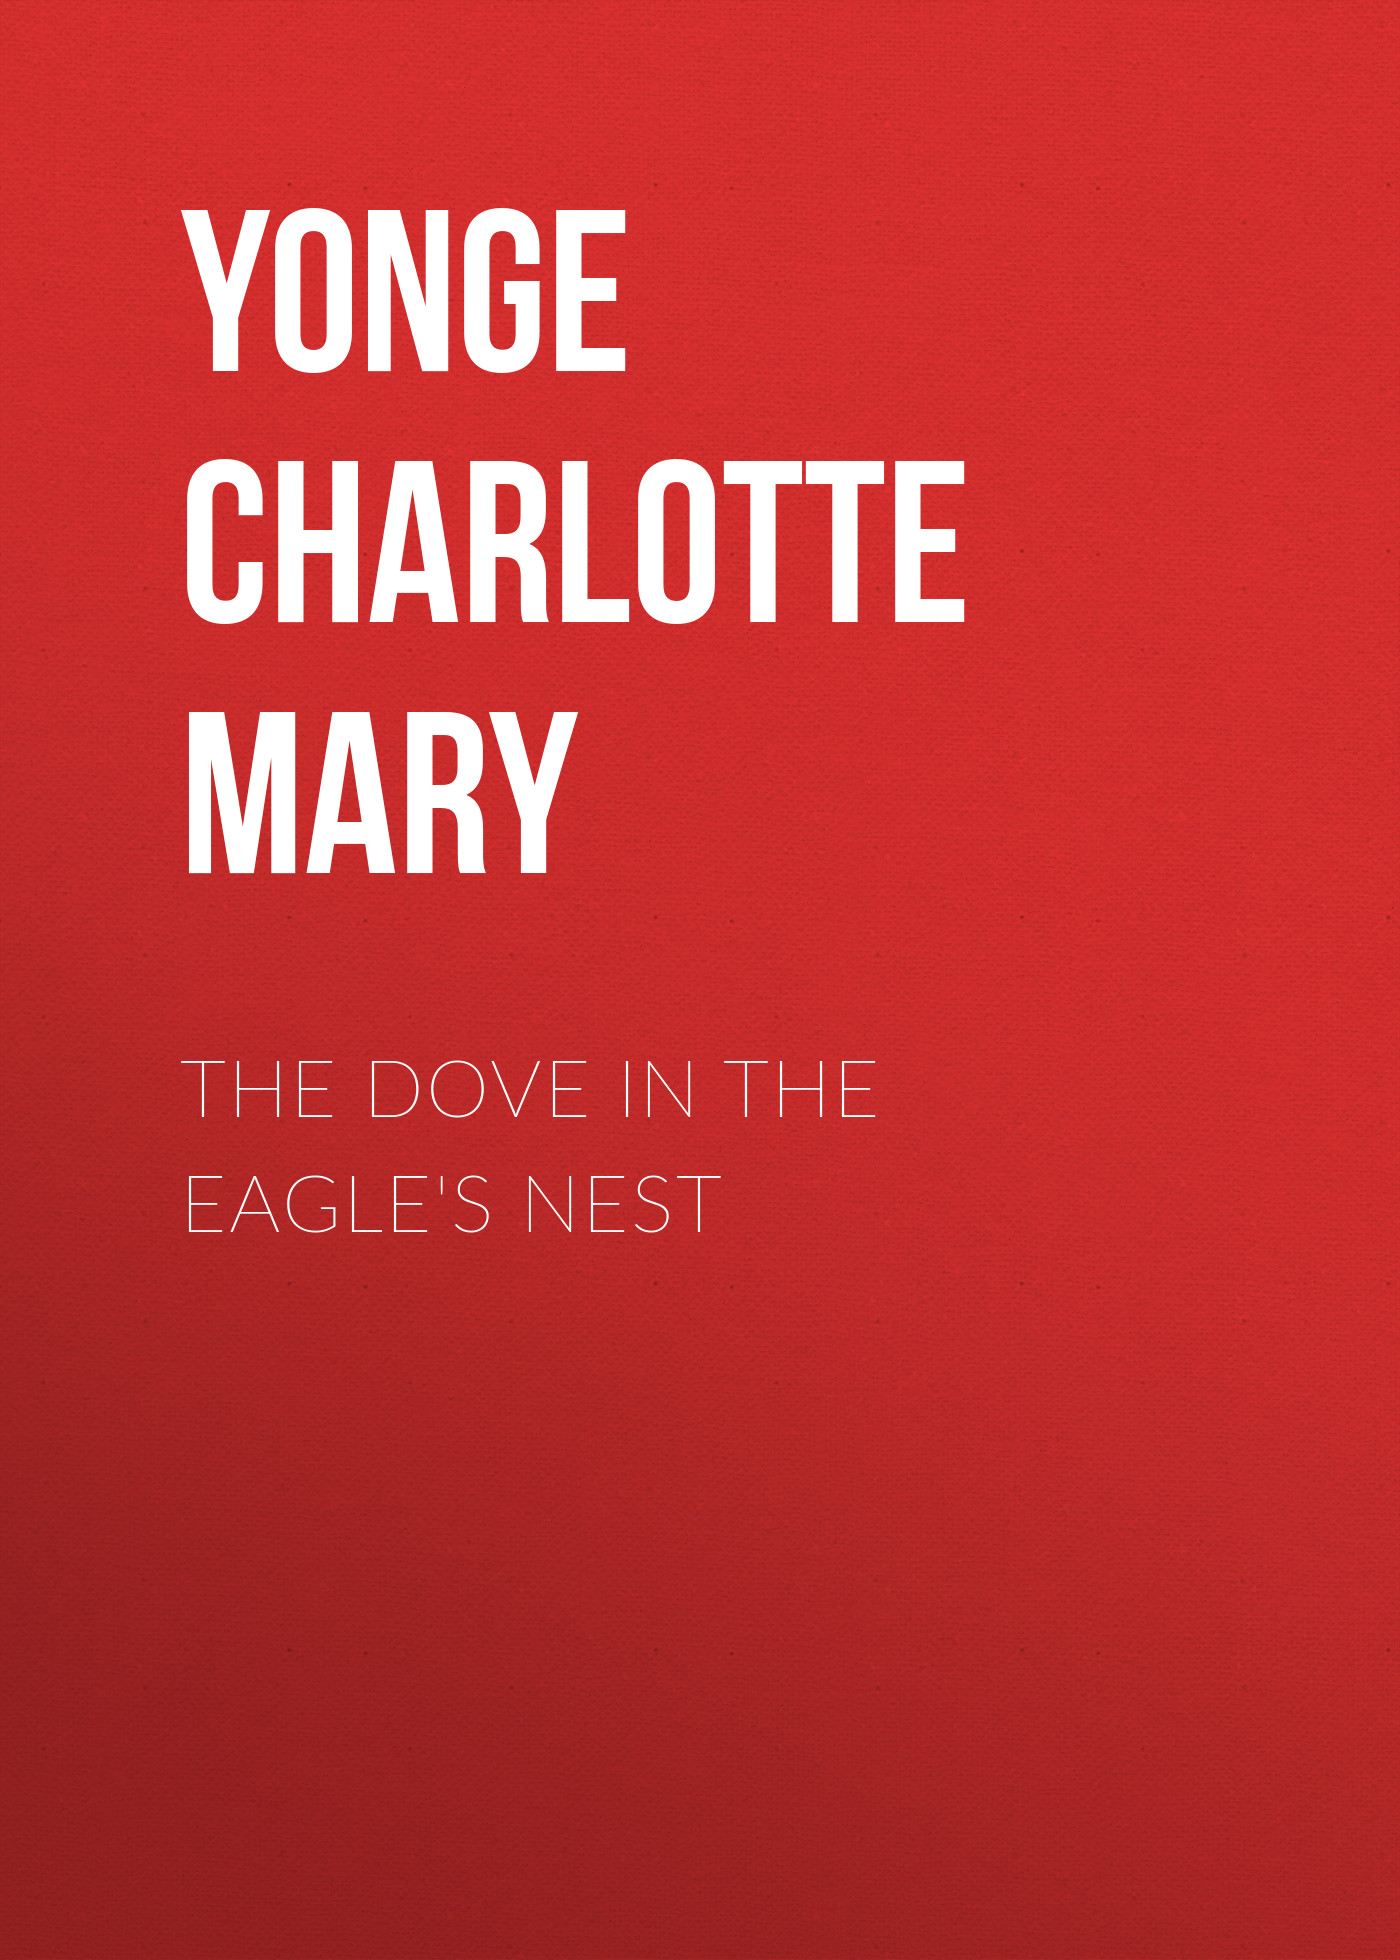 Книга The Dove in the Eagle's Nest из серии , созданная Charlotte Yonge, написана в жанре Историческая фантастика, Зарубежная старинная литература, Зарубежная классика, Исторические приключения. Стоимость электронной книги The Dove in the Eagle's Nest с идентификатором 36092261 составляет 0 руб.